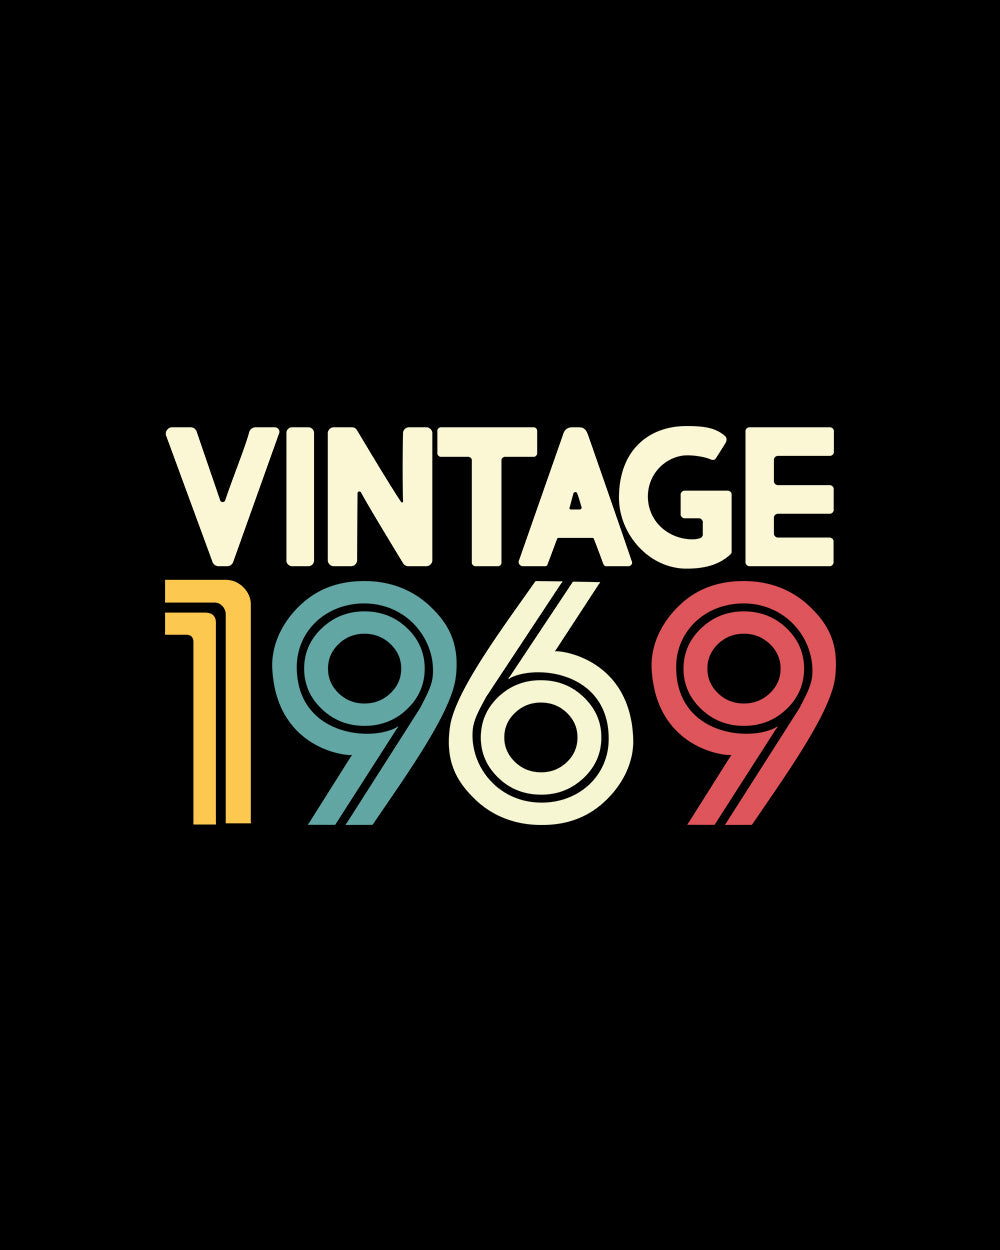 Vintage 1969 T-Shirt Australia Online #colour_black